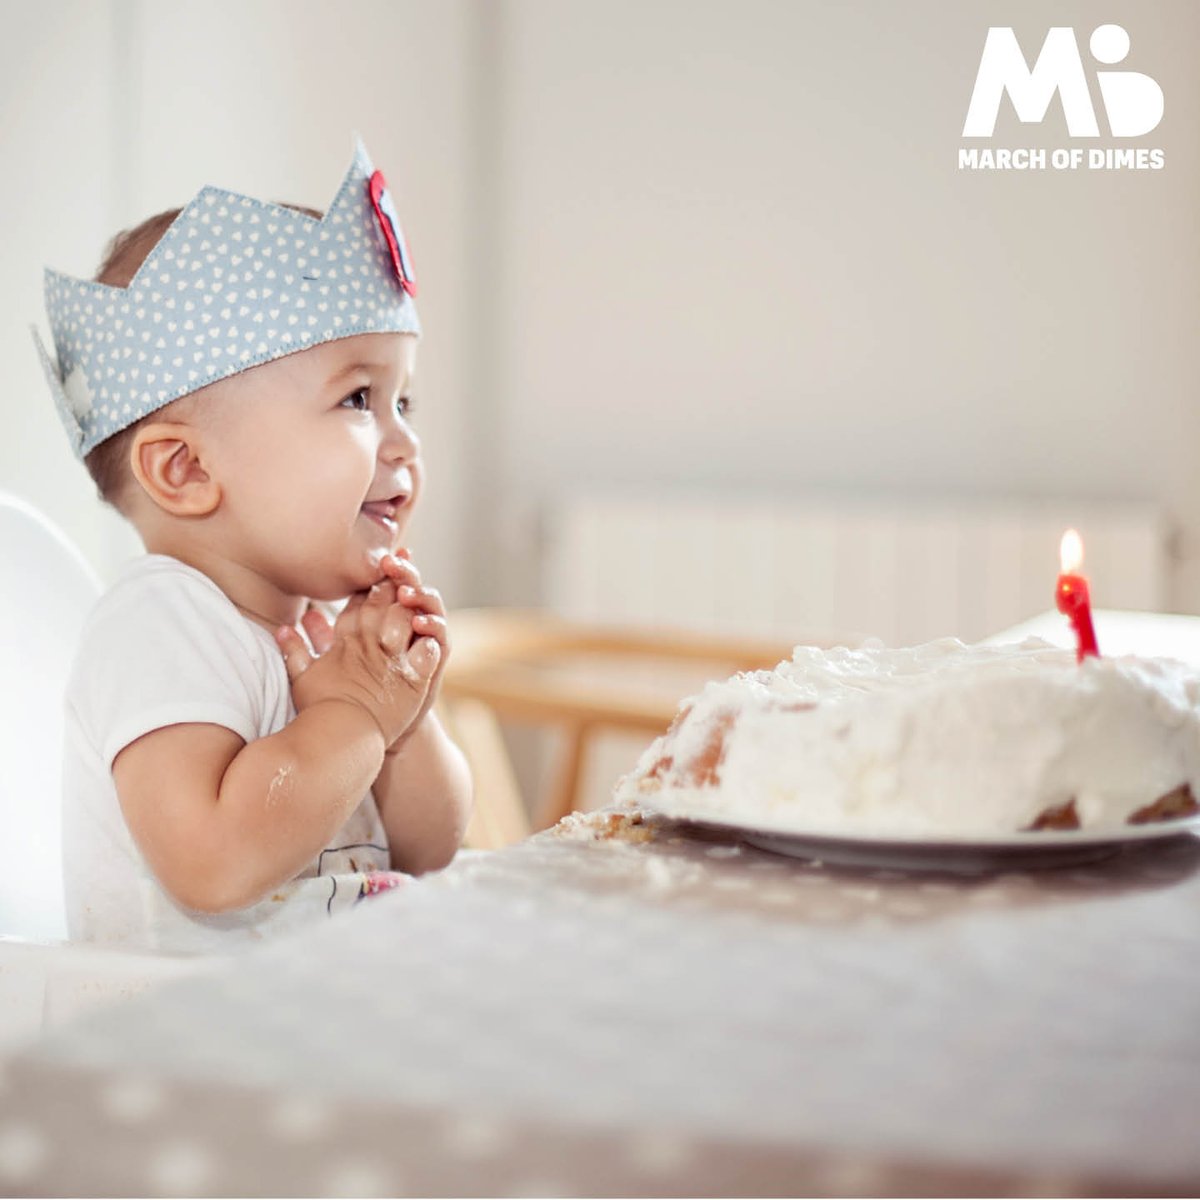 Ayudemos a que todos los bebés celebren su primer añito